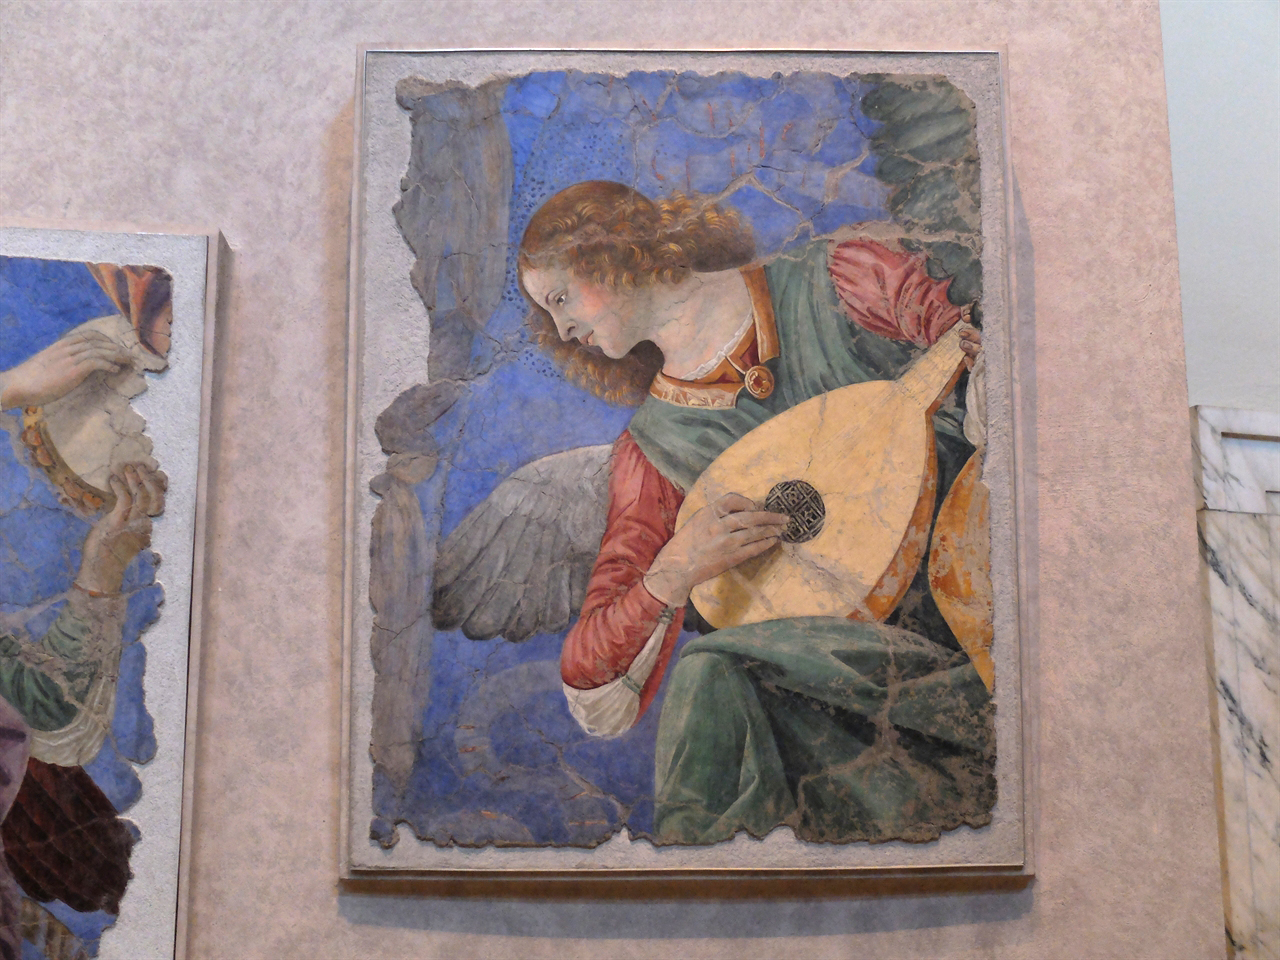  멜로초 다 포를리, <음악의 천사들>(부분), 바티칸 박물관 회화관. 